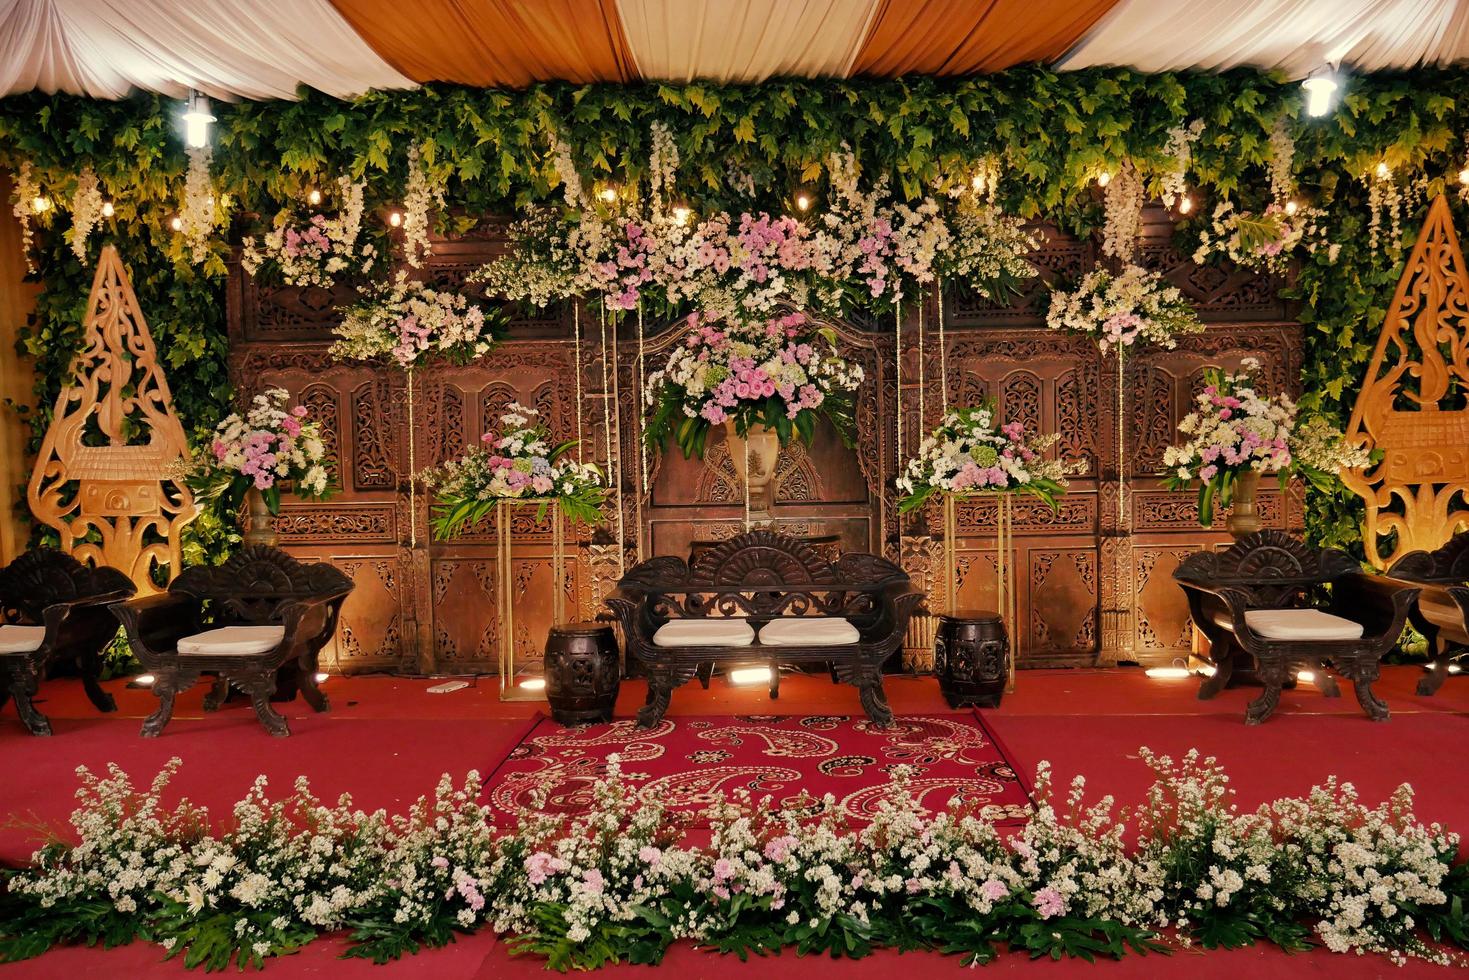 arco di nozze, matrimonio, momento del matrimonio, addobbi nuziali, fiori, sedie, cerimonia all'aperto all'aria aperta foto